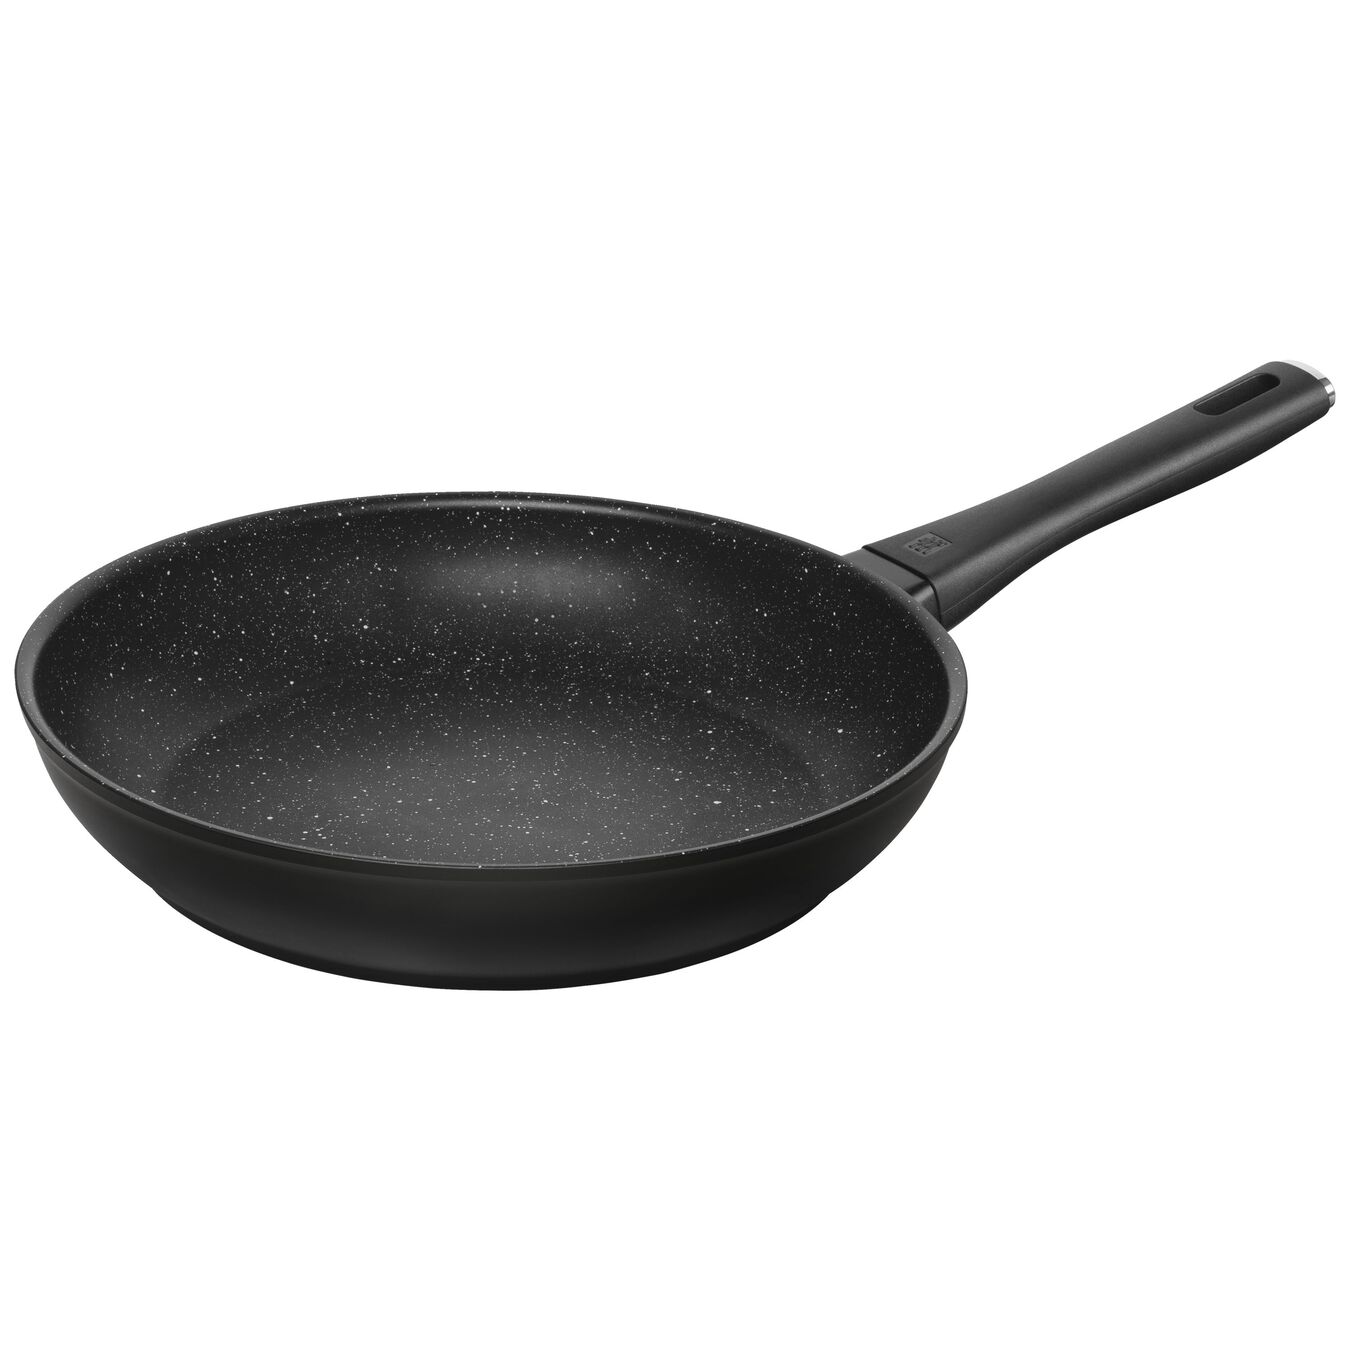 28 cm / 11 inch aluminium Frying pan,,large 1